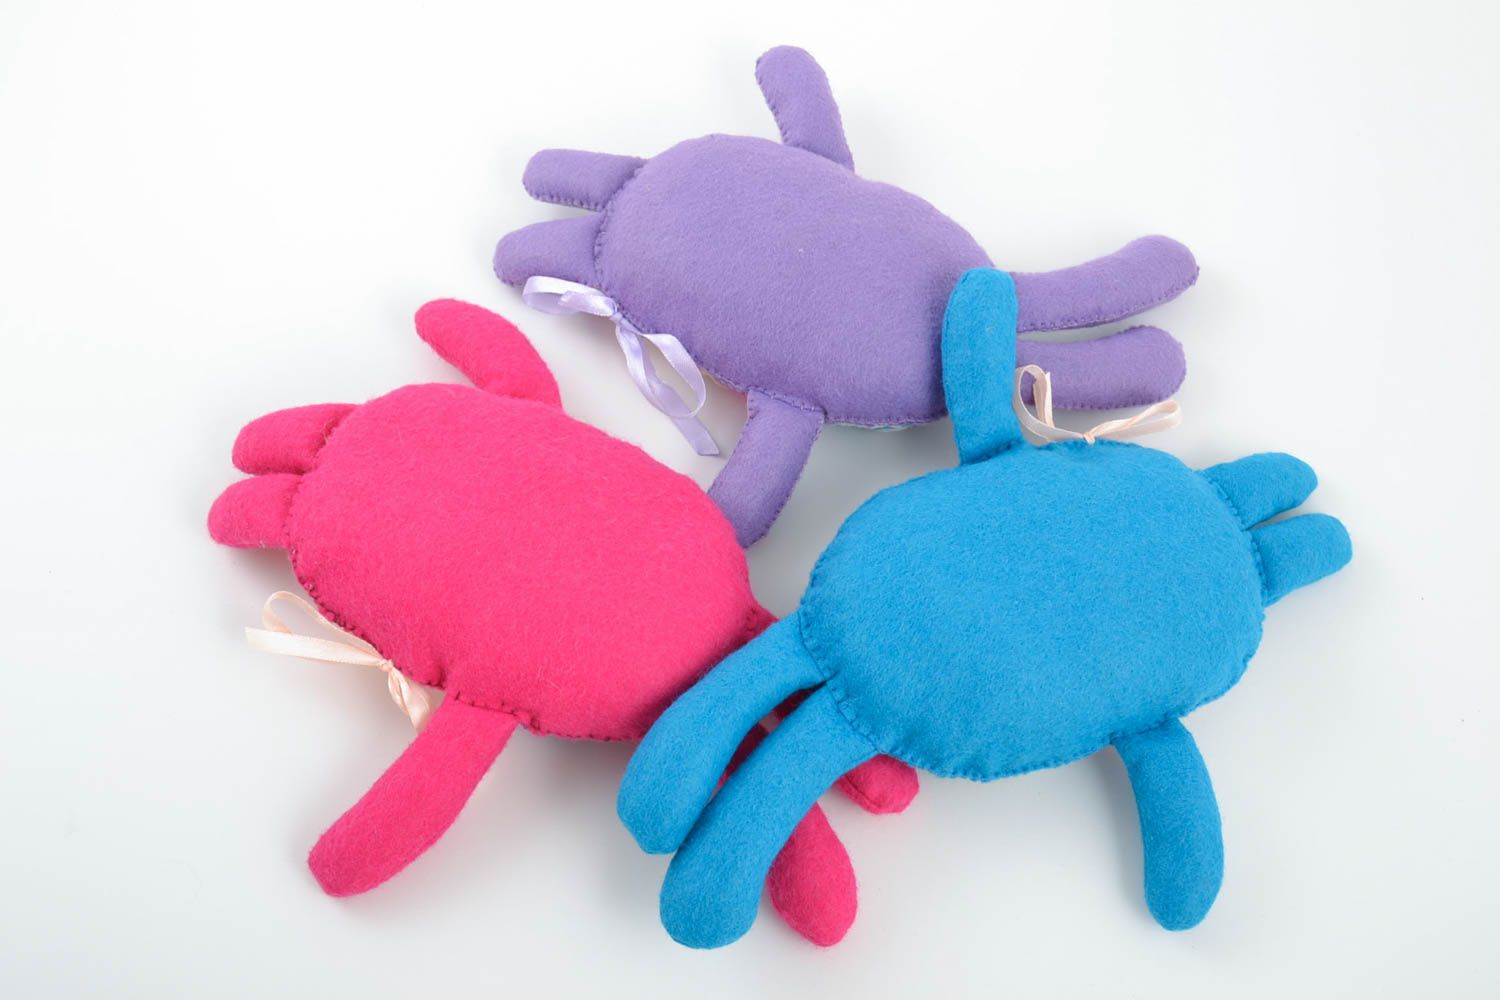 Мягкие игрушки набор зайцев ручной работы из ткани авторские для детей 3 штуки фото 3